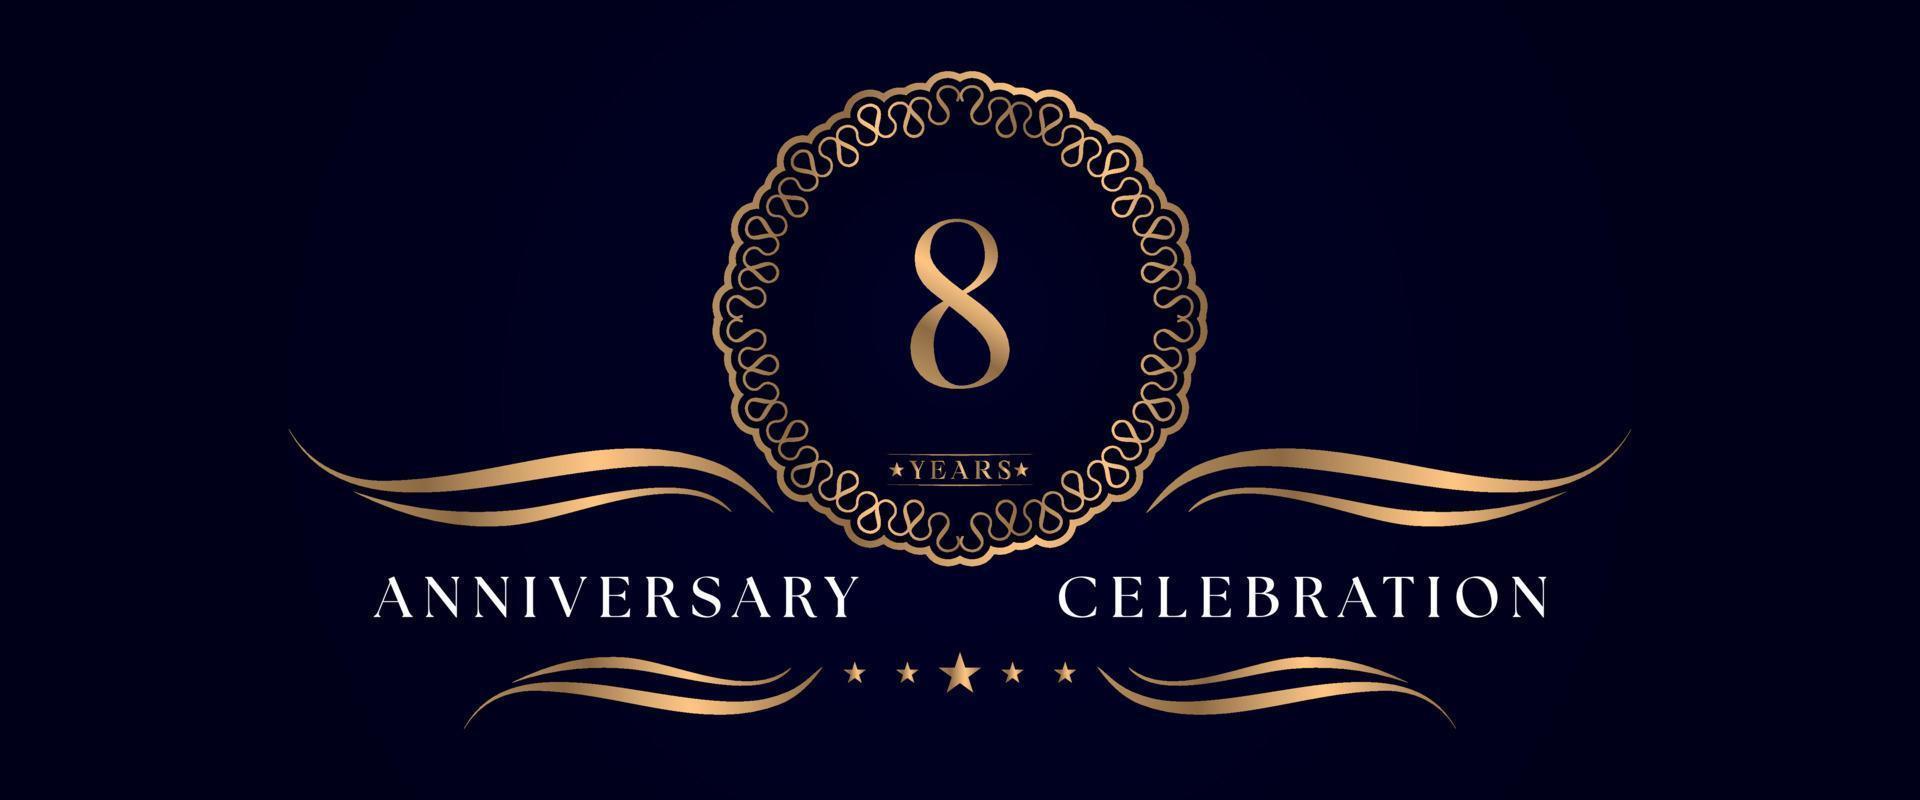 Celebrazione dell'anniversario di 8 anni con elegante cornice circolare isolata su sfondo blu scuro. disegno vettoriale per biglietto di auguri, festa di compleanno, matrimonio, festa evento, cerimonia. Logo dell'anniversario di 8 anni.